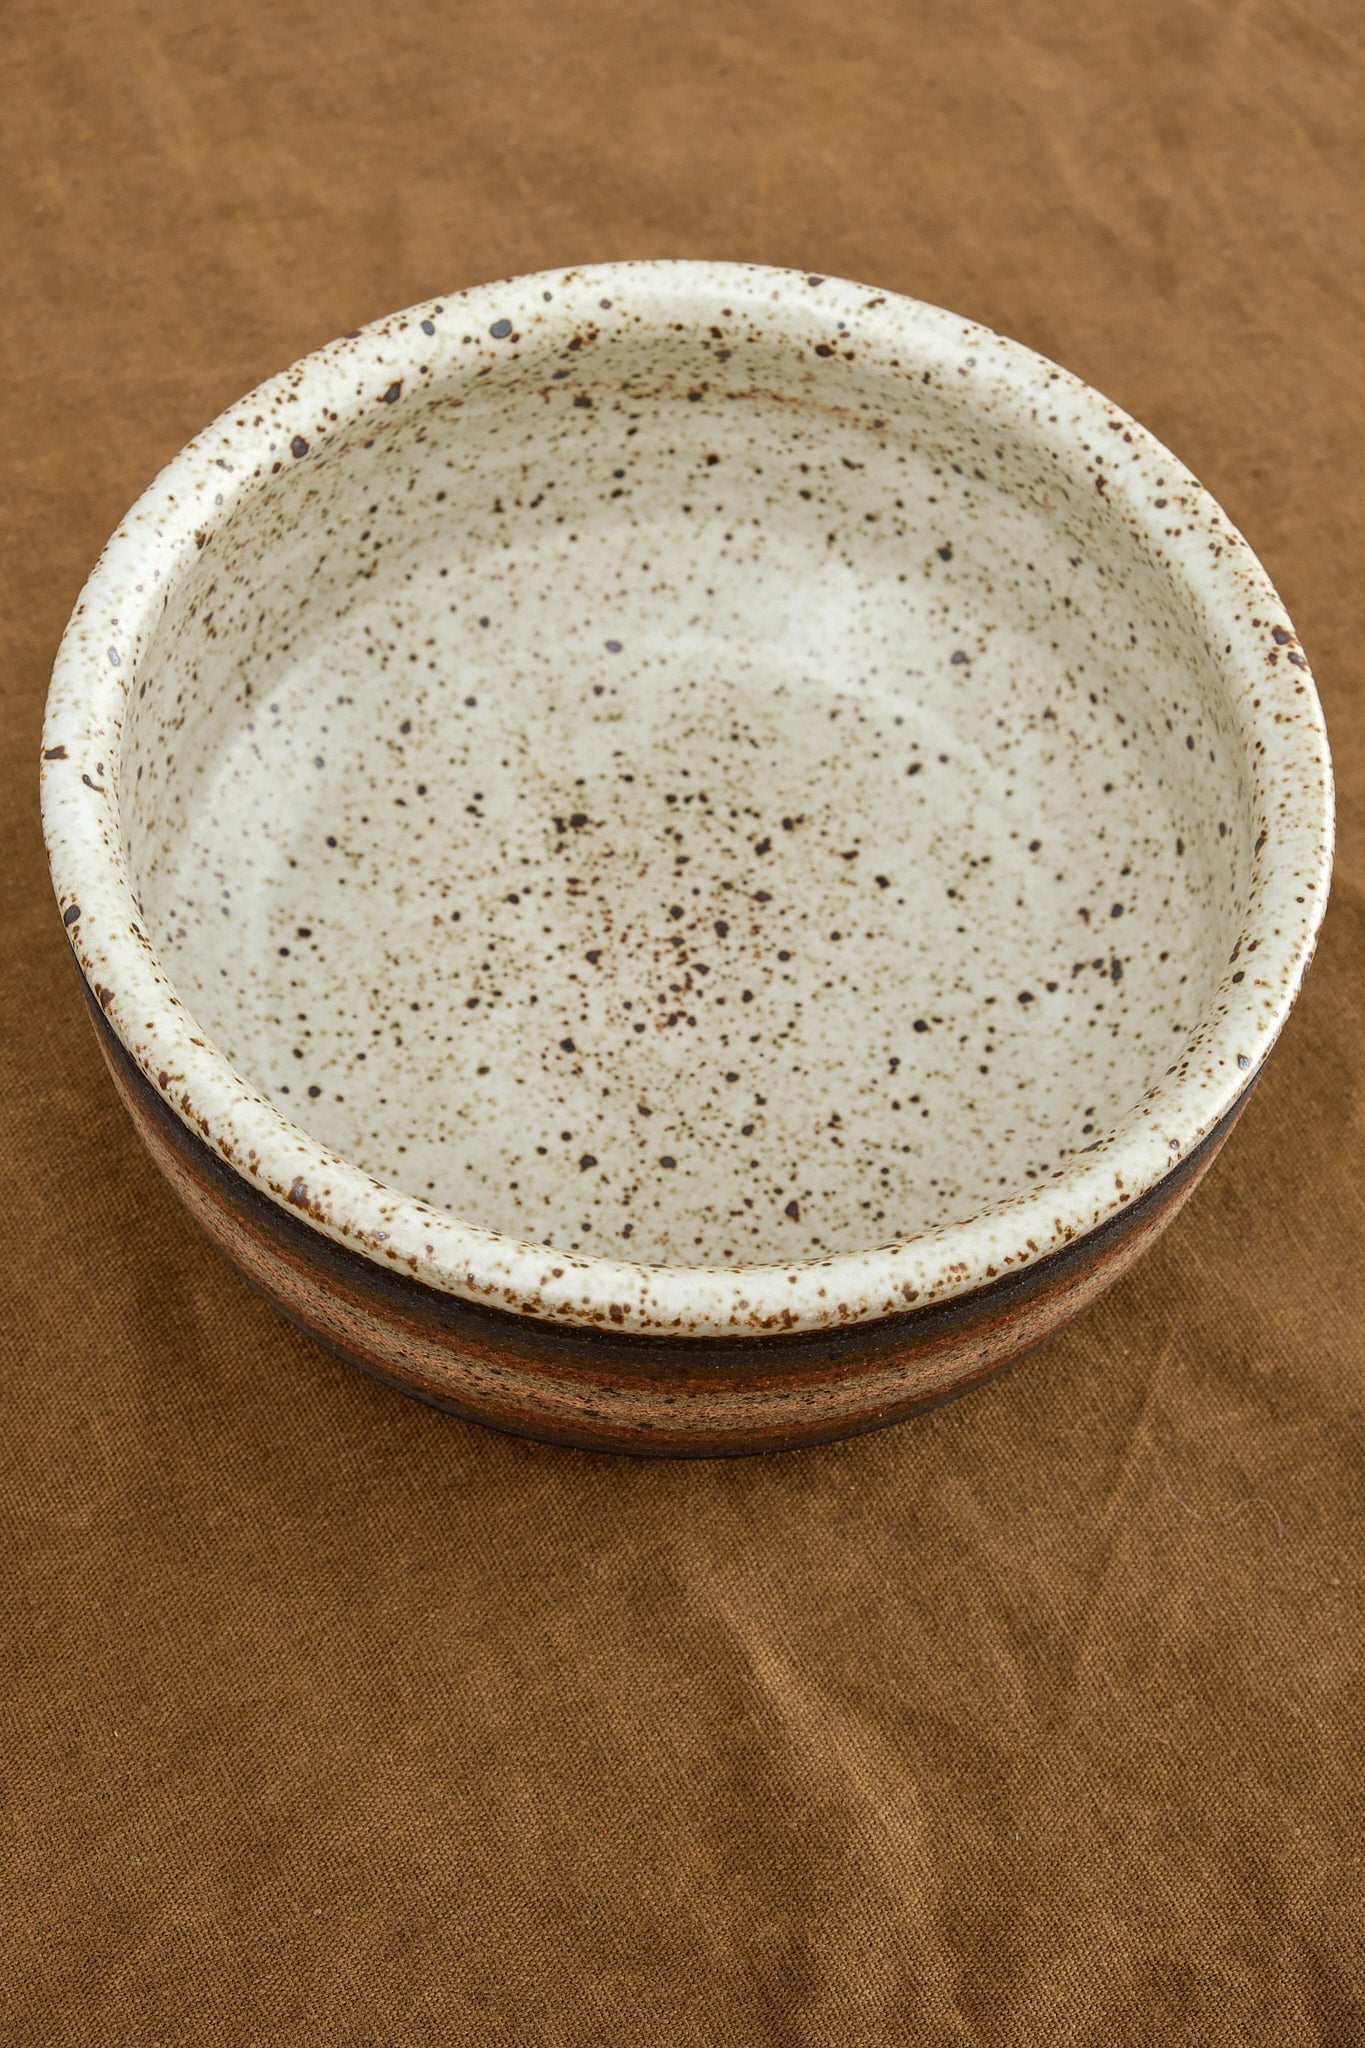 Inside of side serving bowl